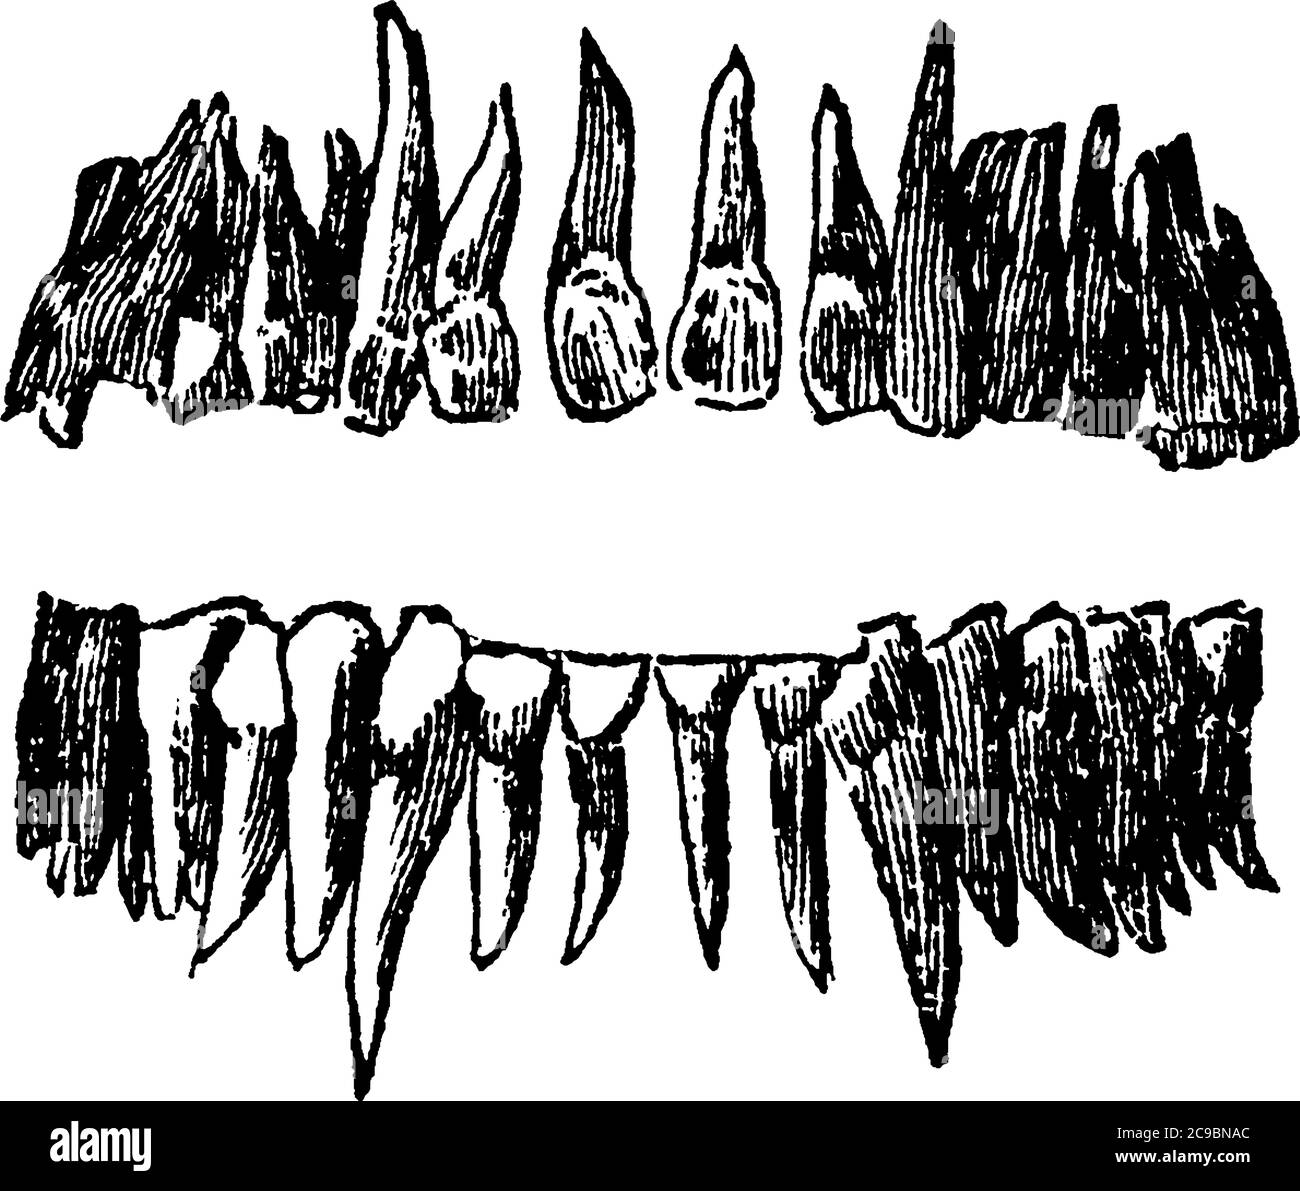 Eine typische Darstellung der vollständigen permanenten Satz von menschlichen Zähnen, vor gesehen; verwendet, um mechanisch brechen die Lebensmittel Partikel verbraucht, Jahrgang Stock Vektor